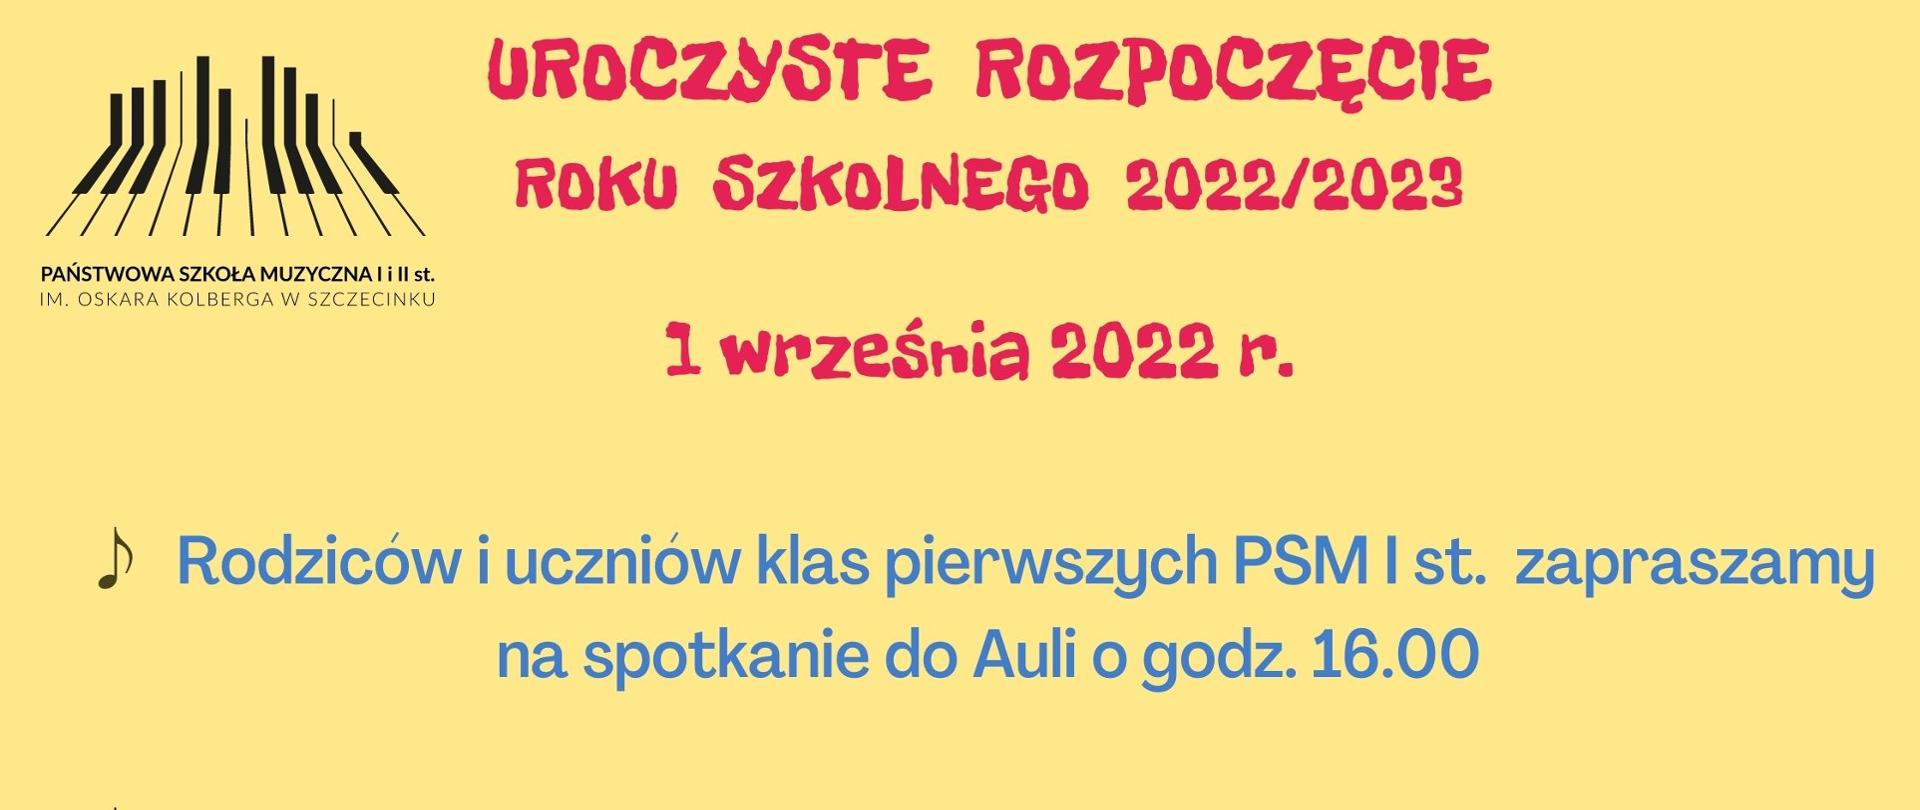 plakat w kolorze żółtym, w lewym górnym rogu logo Państwowej Szkoły Muzycznej w Szczecinku, od góry na środku - czerwony napis "uroczyste rozpoczęcie roku szkolnego 2022/2023", poniżej napis pierwszy września 2022, poniżej w kolorze niebieskim informacje o godzinach spotkania rodziców klas pierwszych - godz. 16.00 oraz pozostałych uczniów godz. 17.00. Na dole kolorowa grafika przedstawiająca do lewej: wiolonczele i smyczek, kolorowe nutki oraz fragment pięciolinii, po prawej kolorowy fortepian.